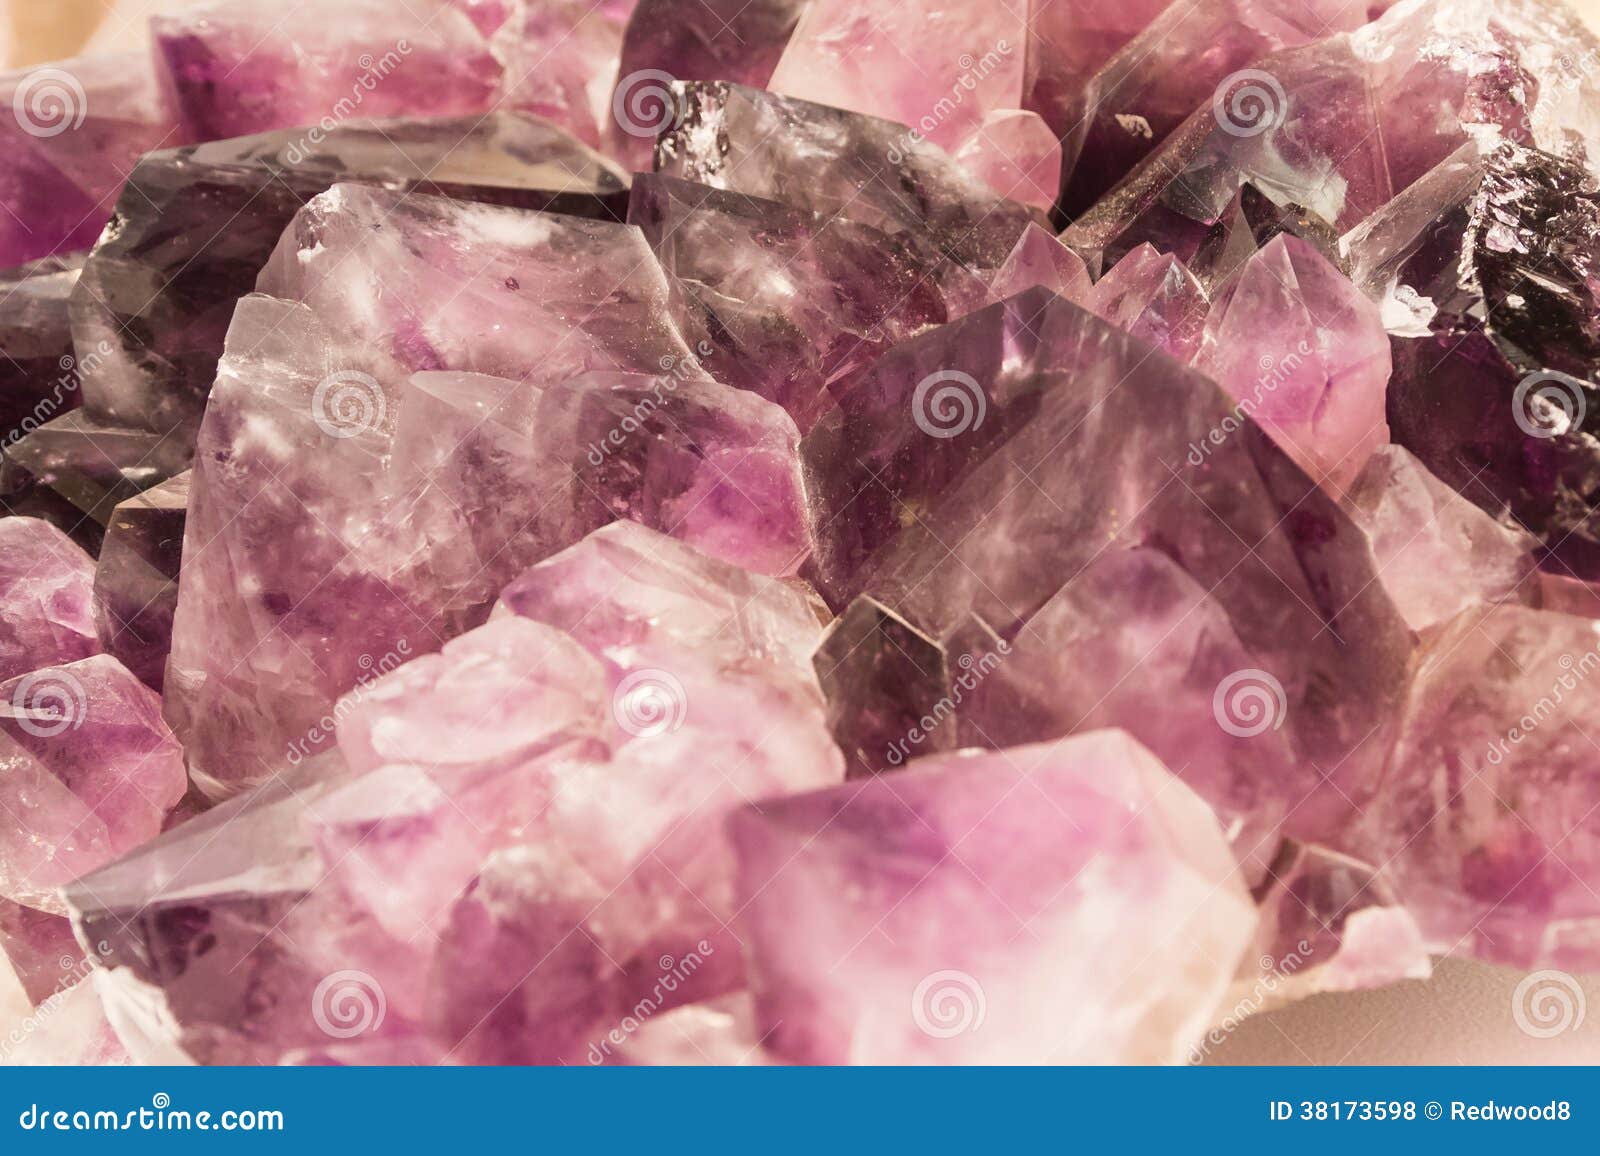 violet amethyst crystals